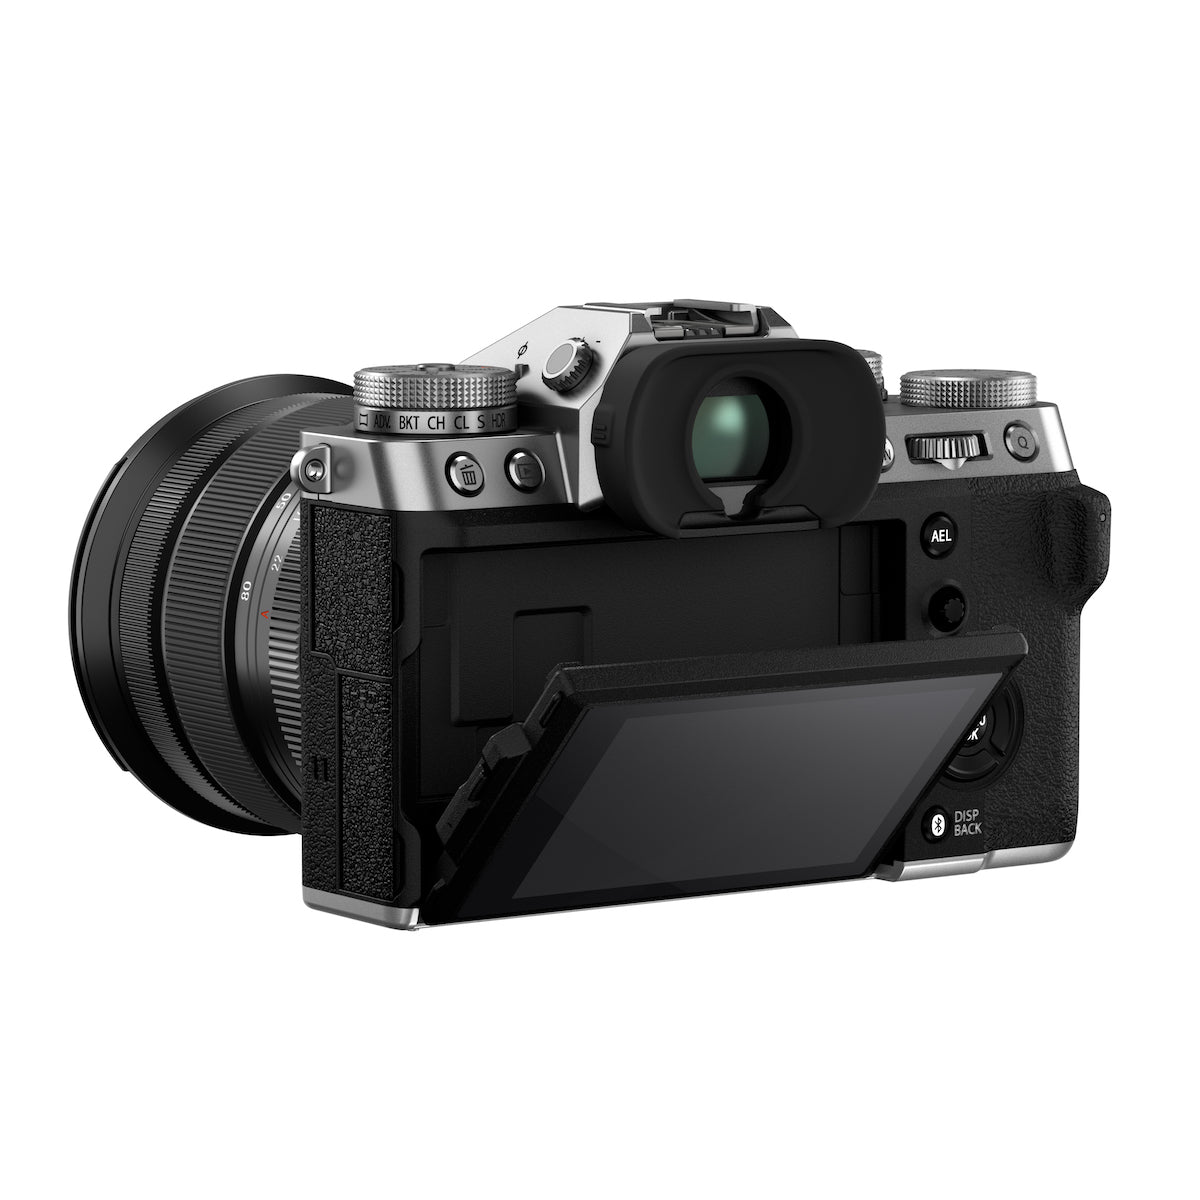 Fujifilm X-T5 Digital Camera w/16-80mm Lens Kit (Silver)